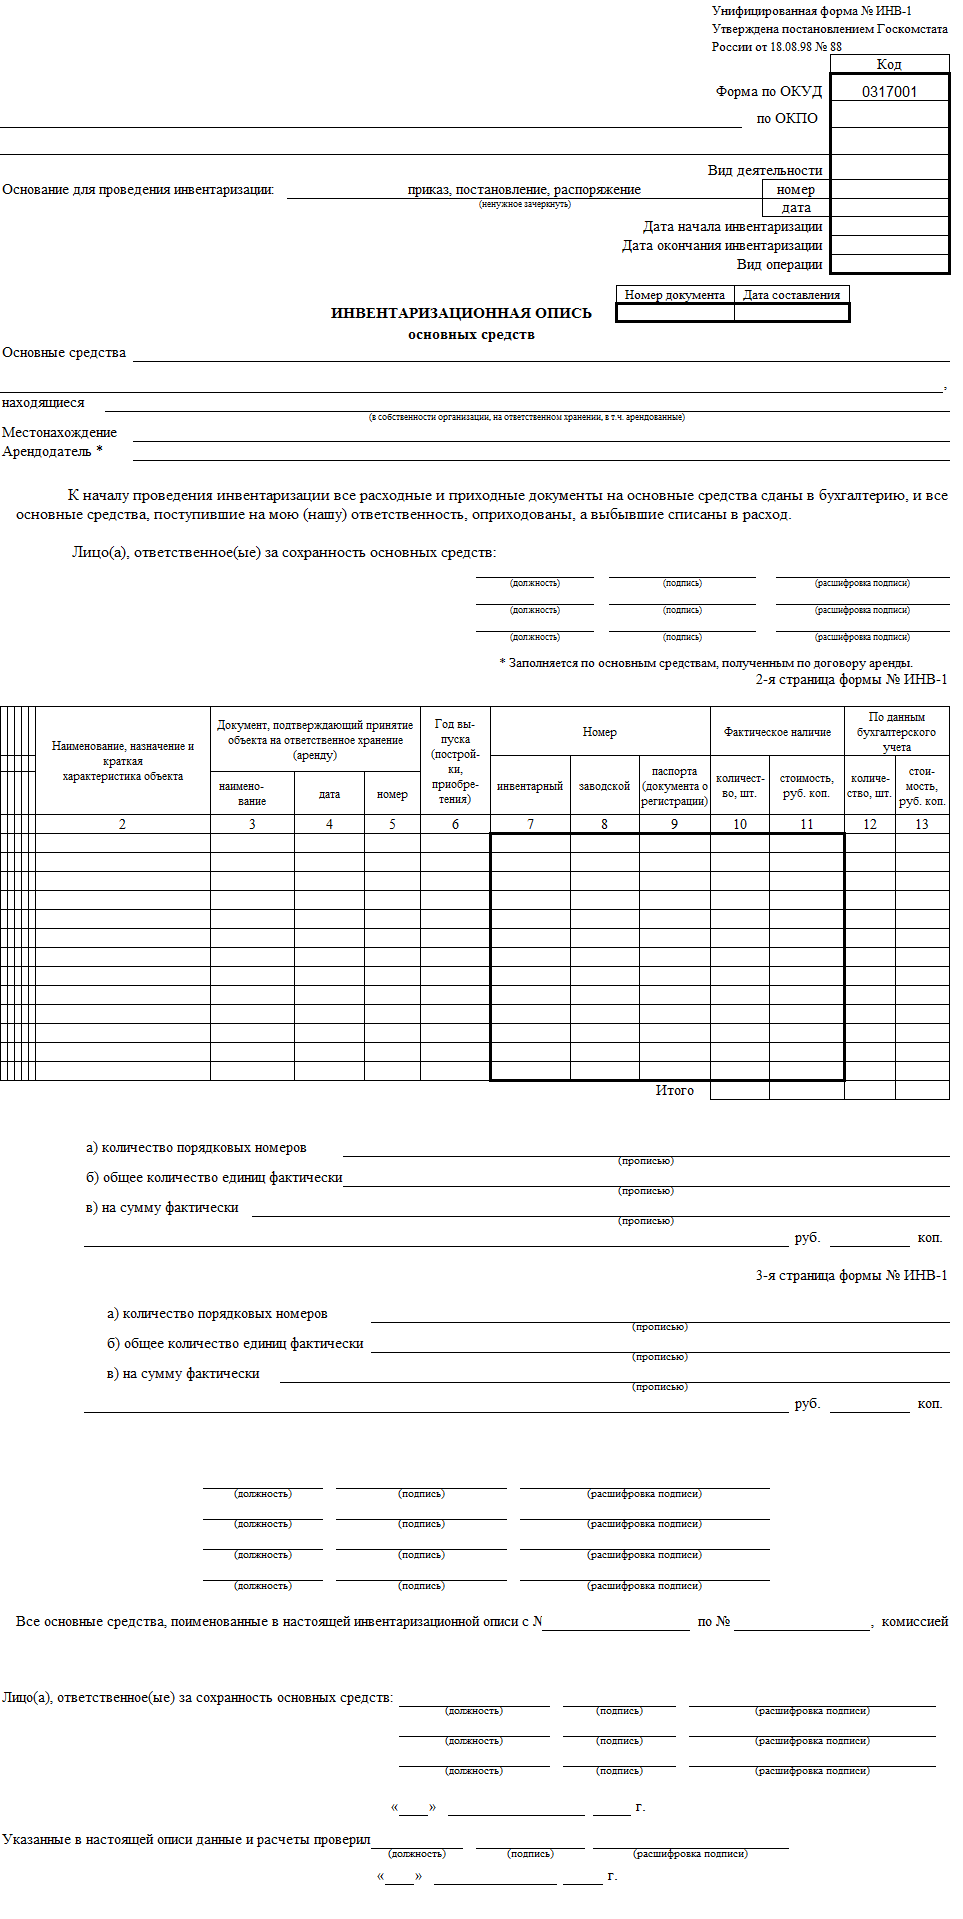  Инвентаризационная опись основных средств (форма № ИНВ-1)